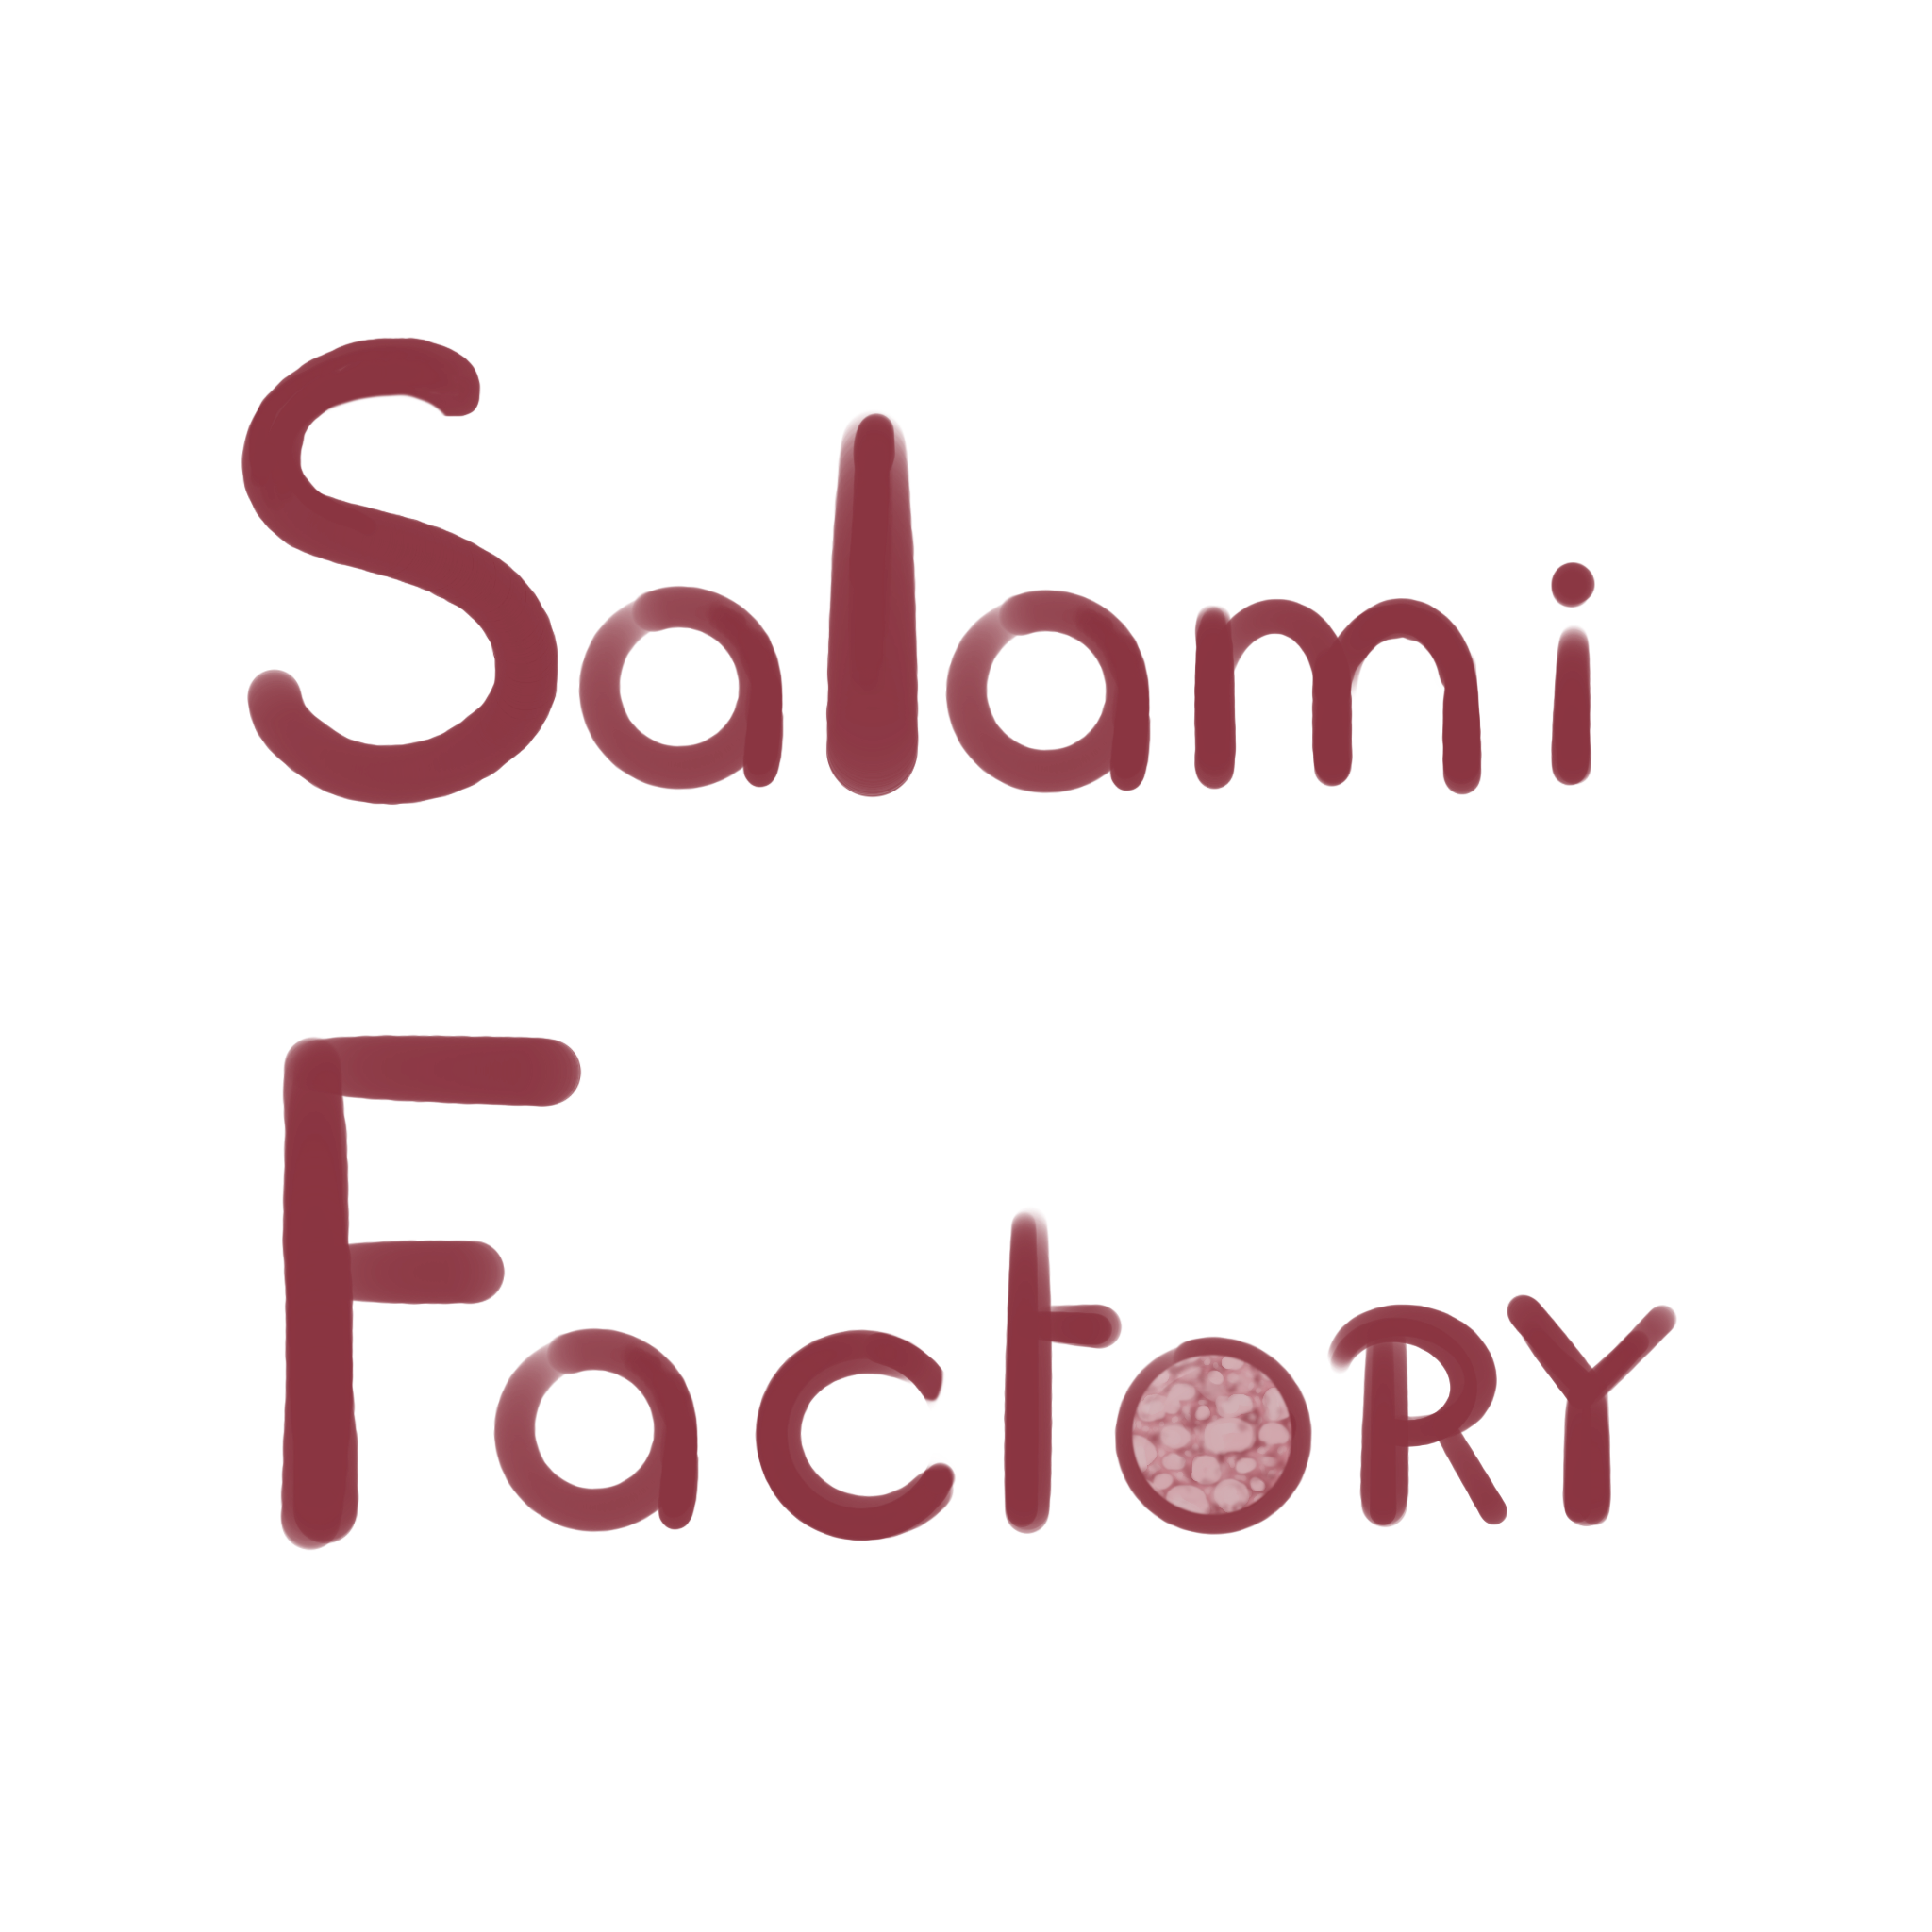 Salami Factory